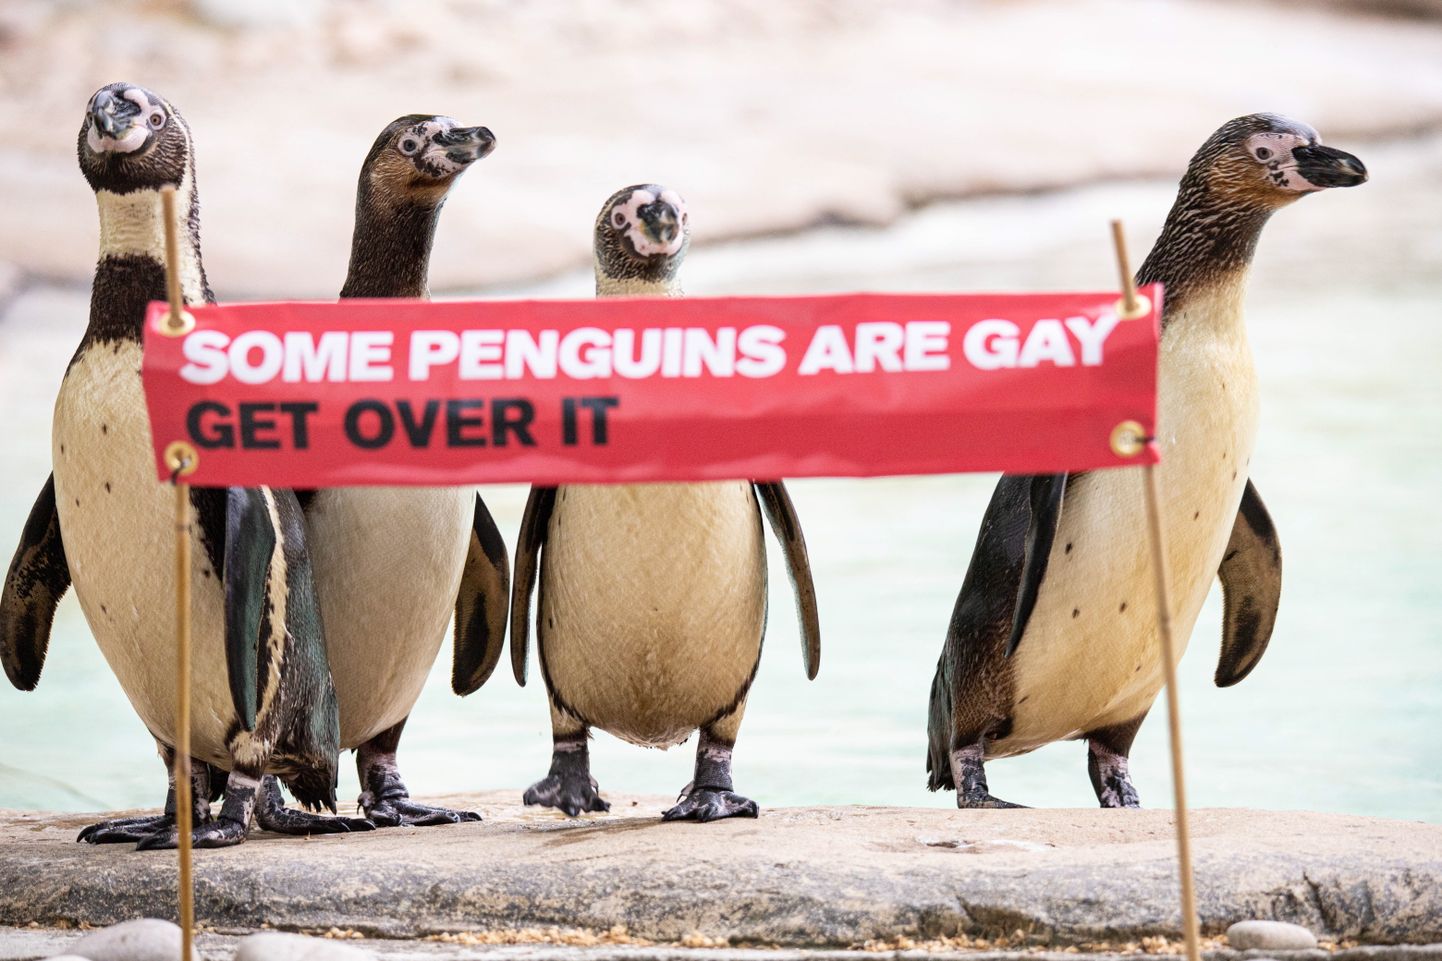 Londonas zoodārza slavenākais geju pāris - pingvīni Ronijs un Redžijs.